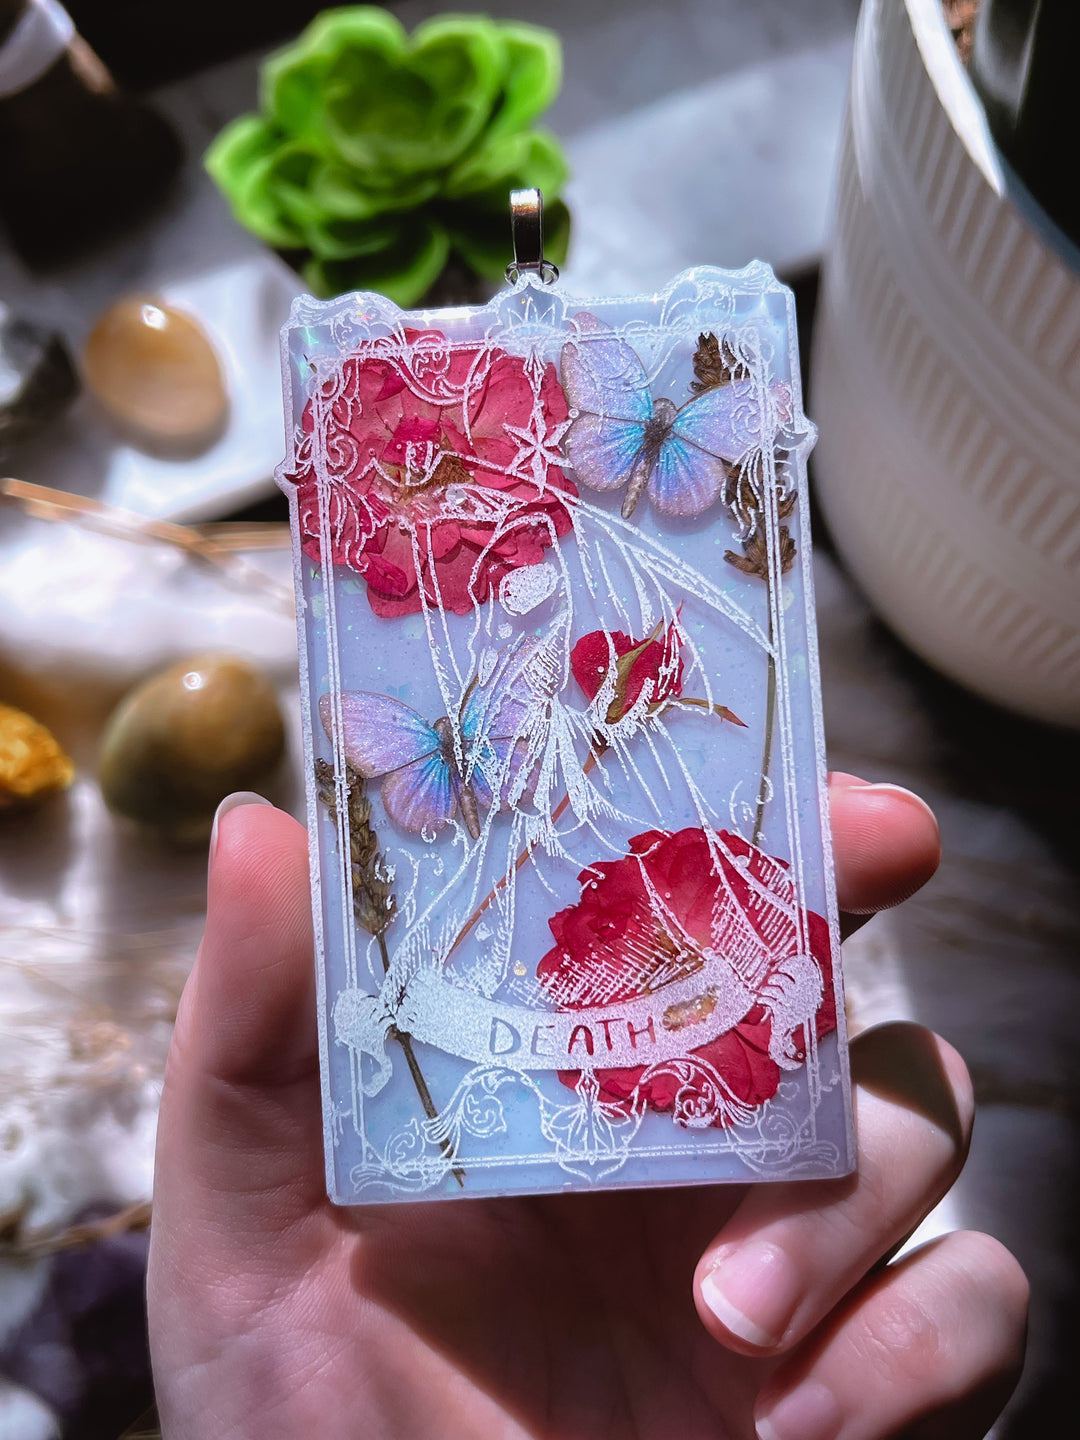 “Death” Tarot Card Hanging